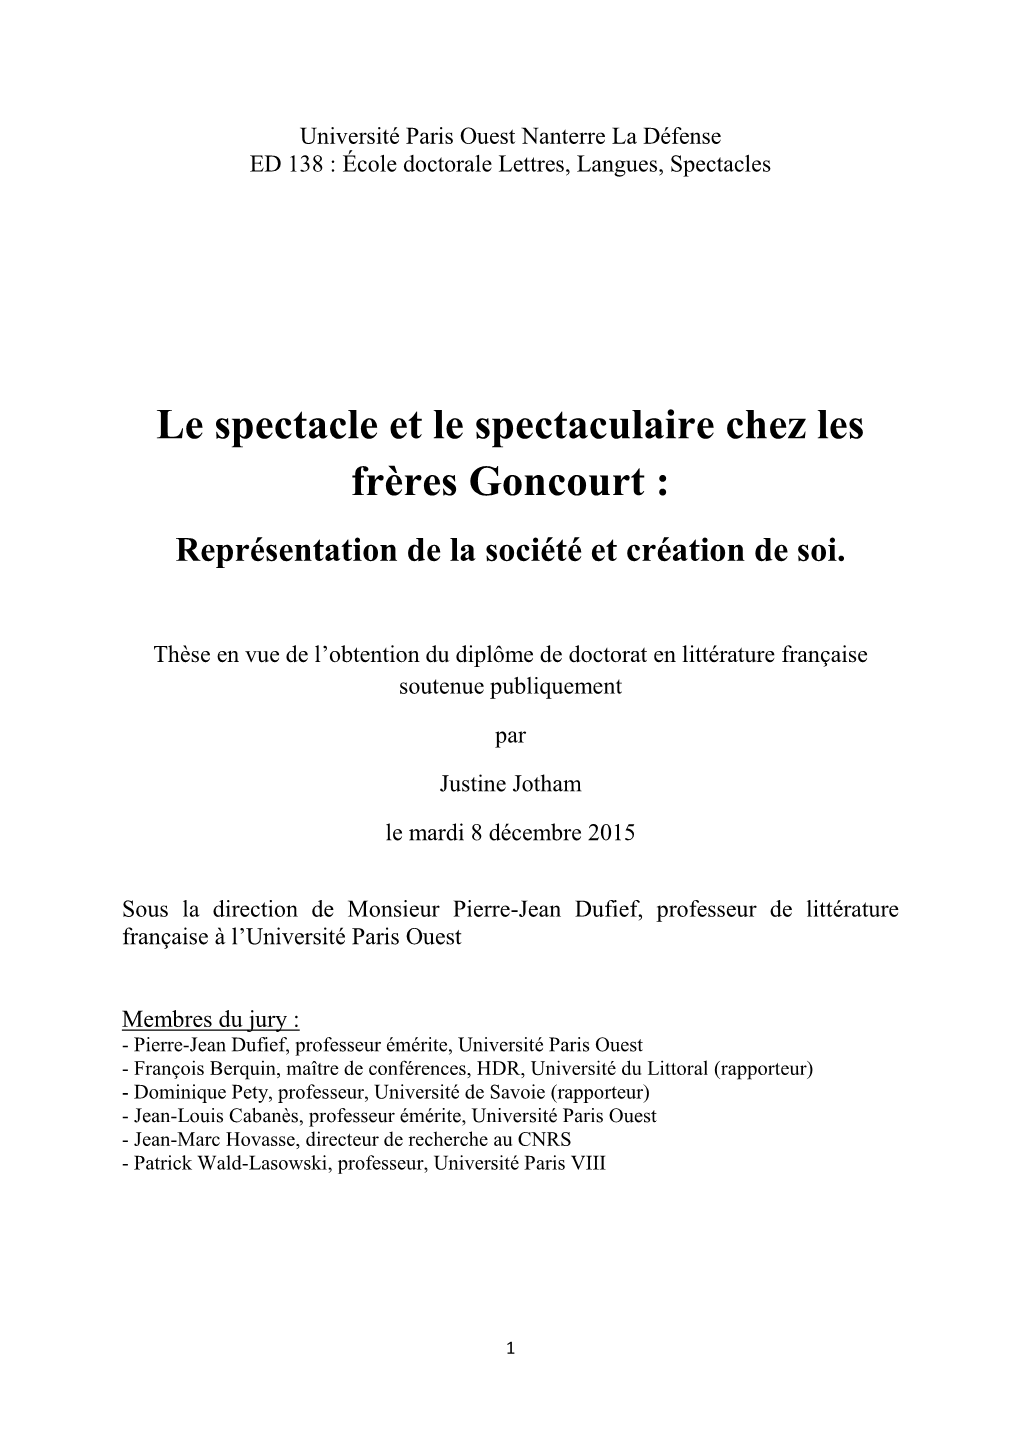 Le Spectacle Et Le Spectaculaire Chez Les Frères Goncourt : Représentation De La Société Et Création De Soi